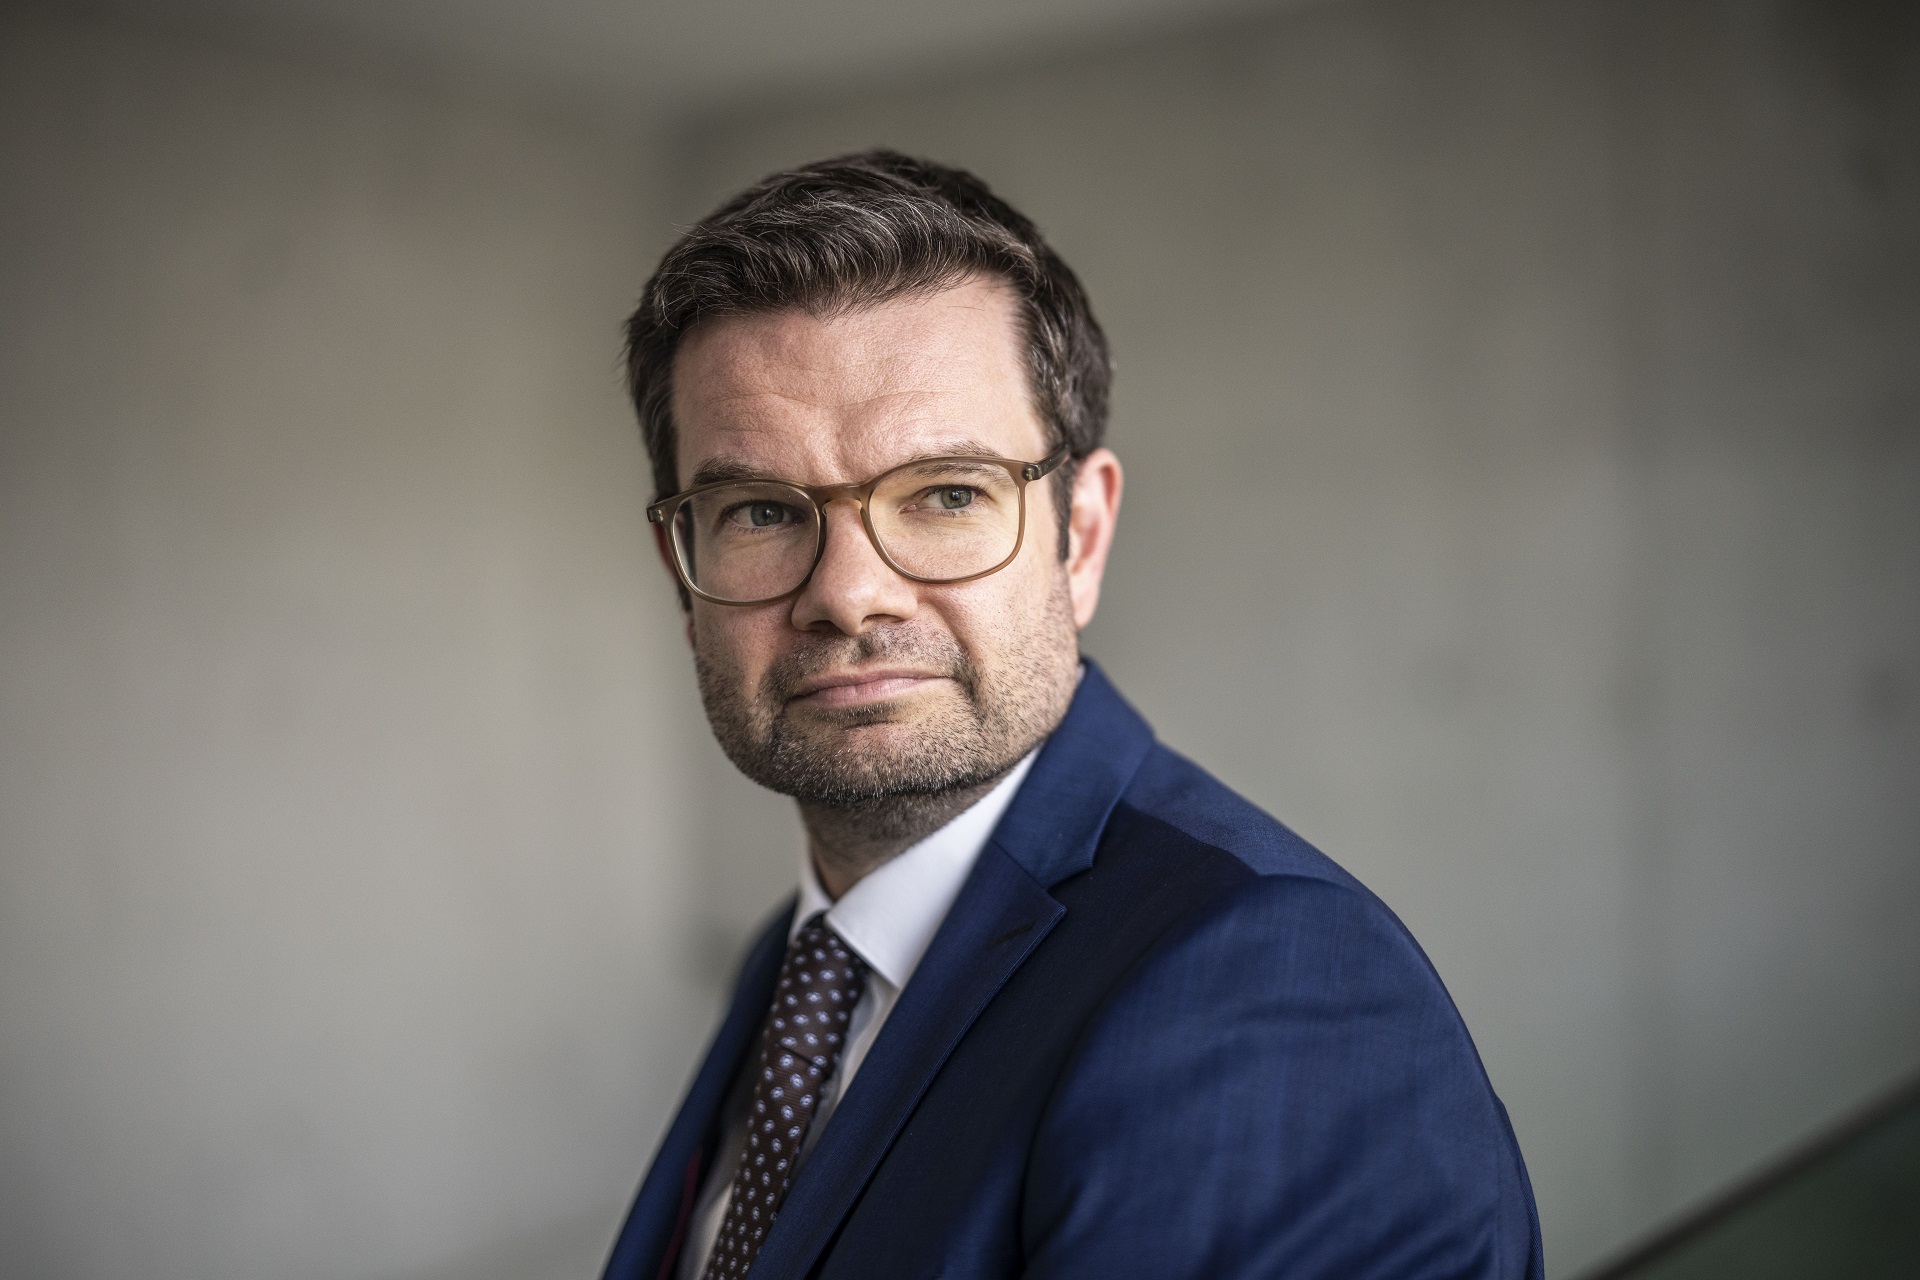 Porträtfoto von Bundesjustizminister Marco Buschmann im blauen Anzug, vor einer dunkelgrauen Wand.